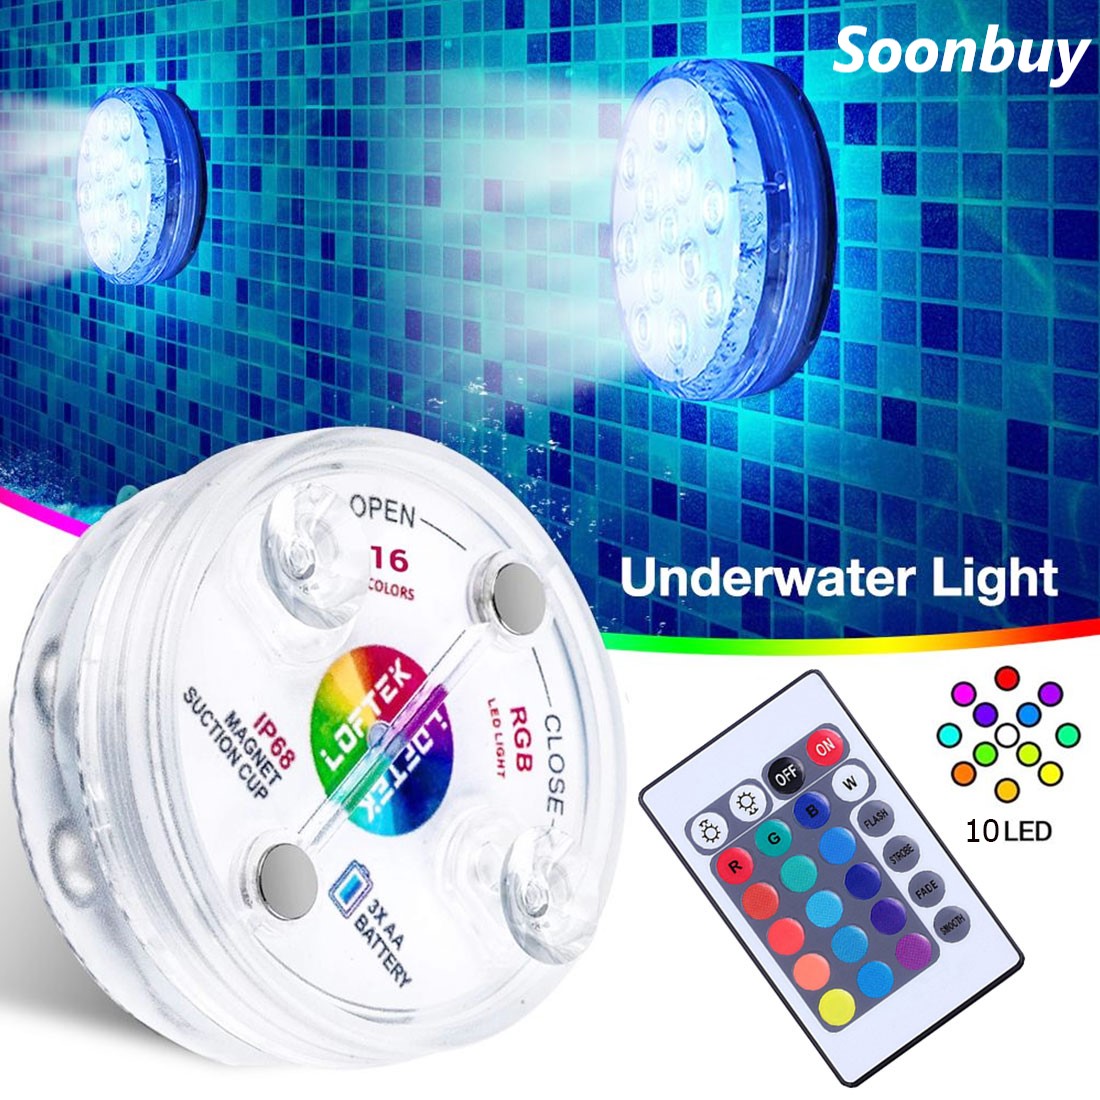 การควบคุมระยะไกลไร้สาย LED หลายสีสปอตไลกันน้ำพรรคโคมไฟตกแต่งแสง ใช้ได้ทั้งภายนอกและใต้น้ำ underwater light 1pcs/4pcs Soonbuy